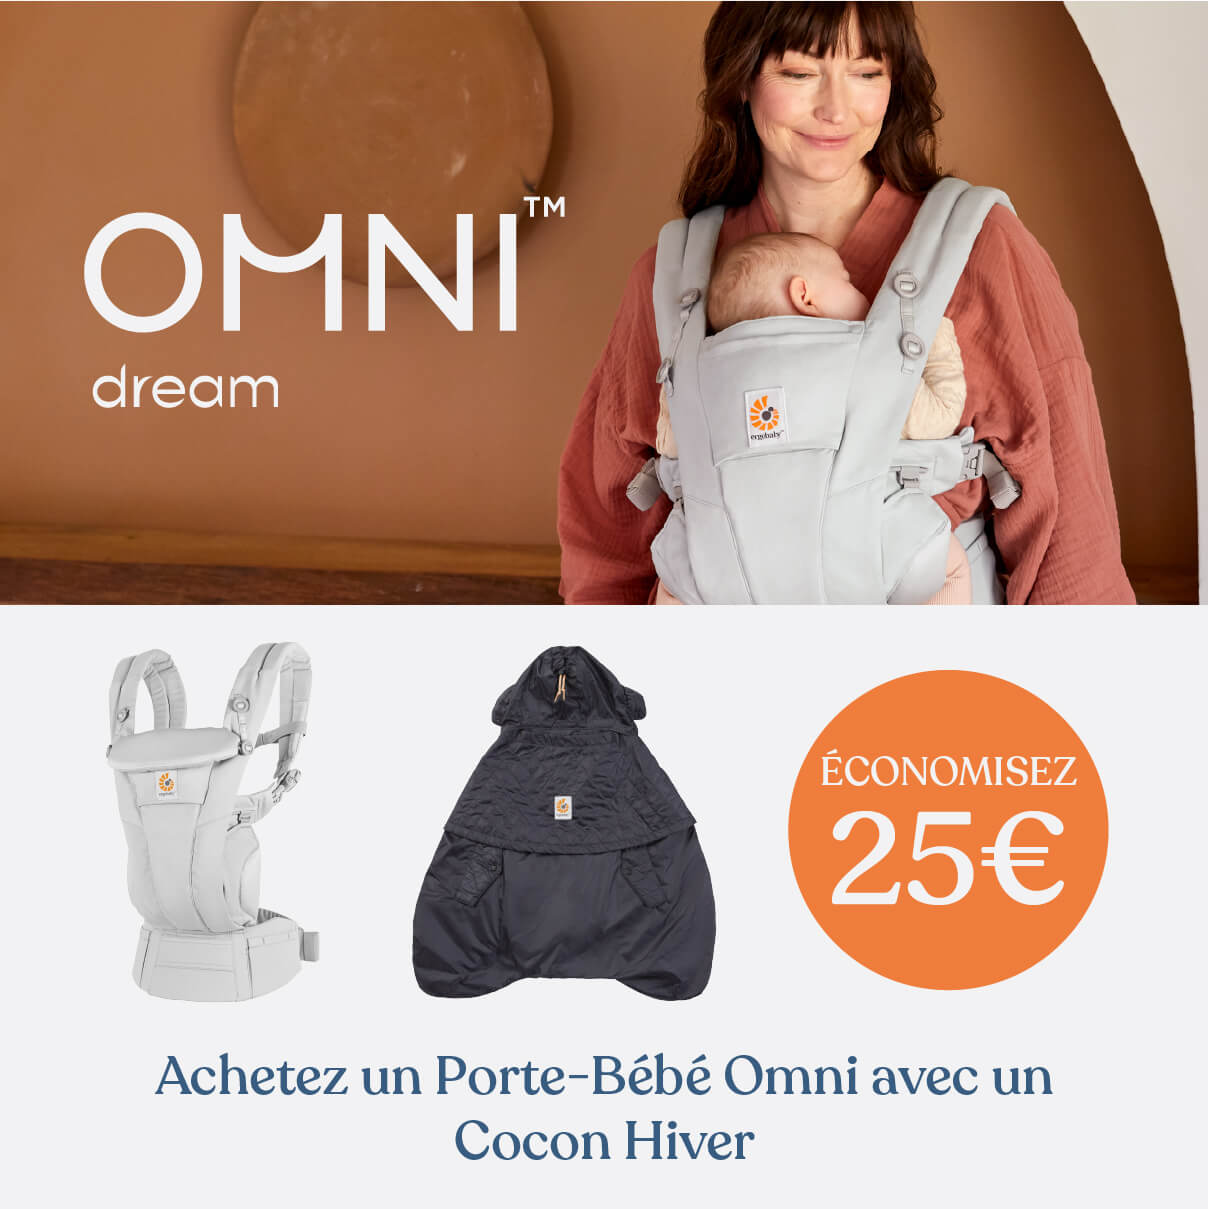 Set Météo Omni Dream & Cocon Hiver - 25€ réduction